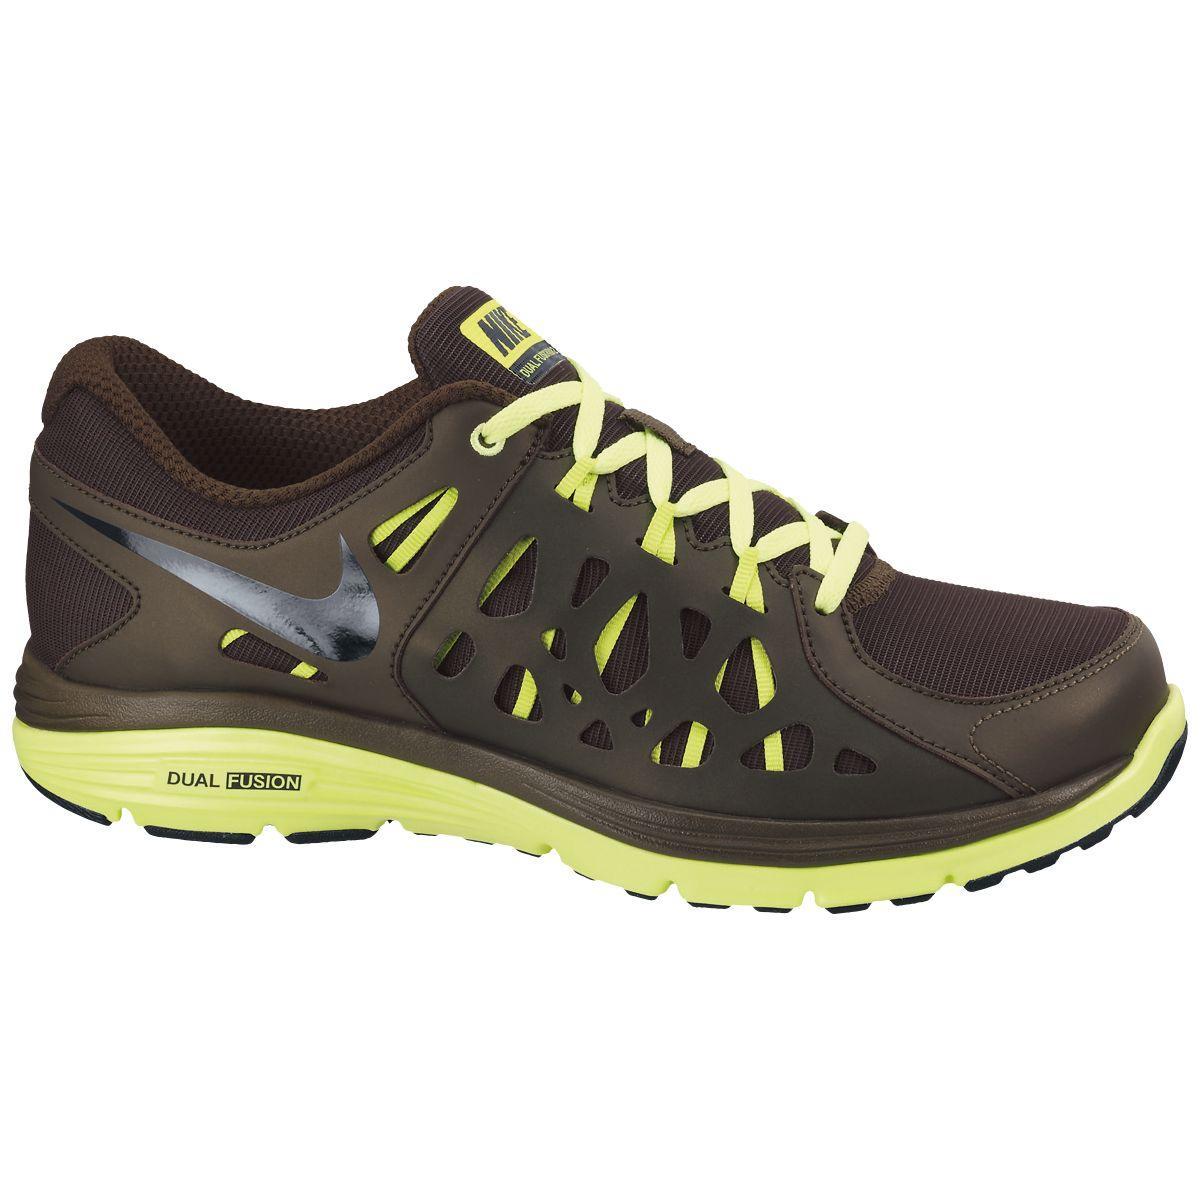 Nike Mens Dual Fusion Run Shield Shoes - Khaki/Lime - Tennisnuts.com